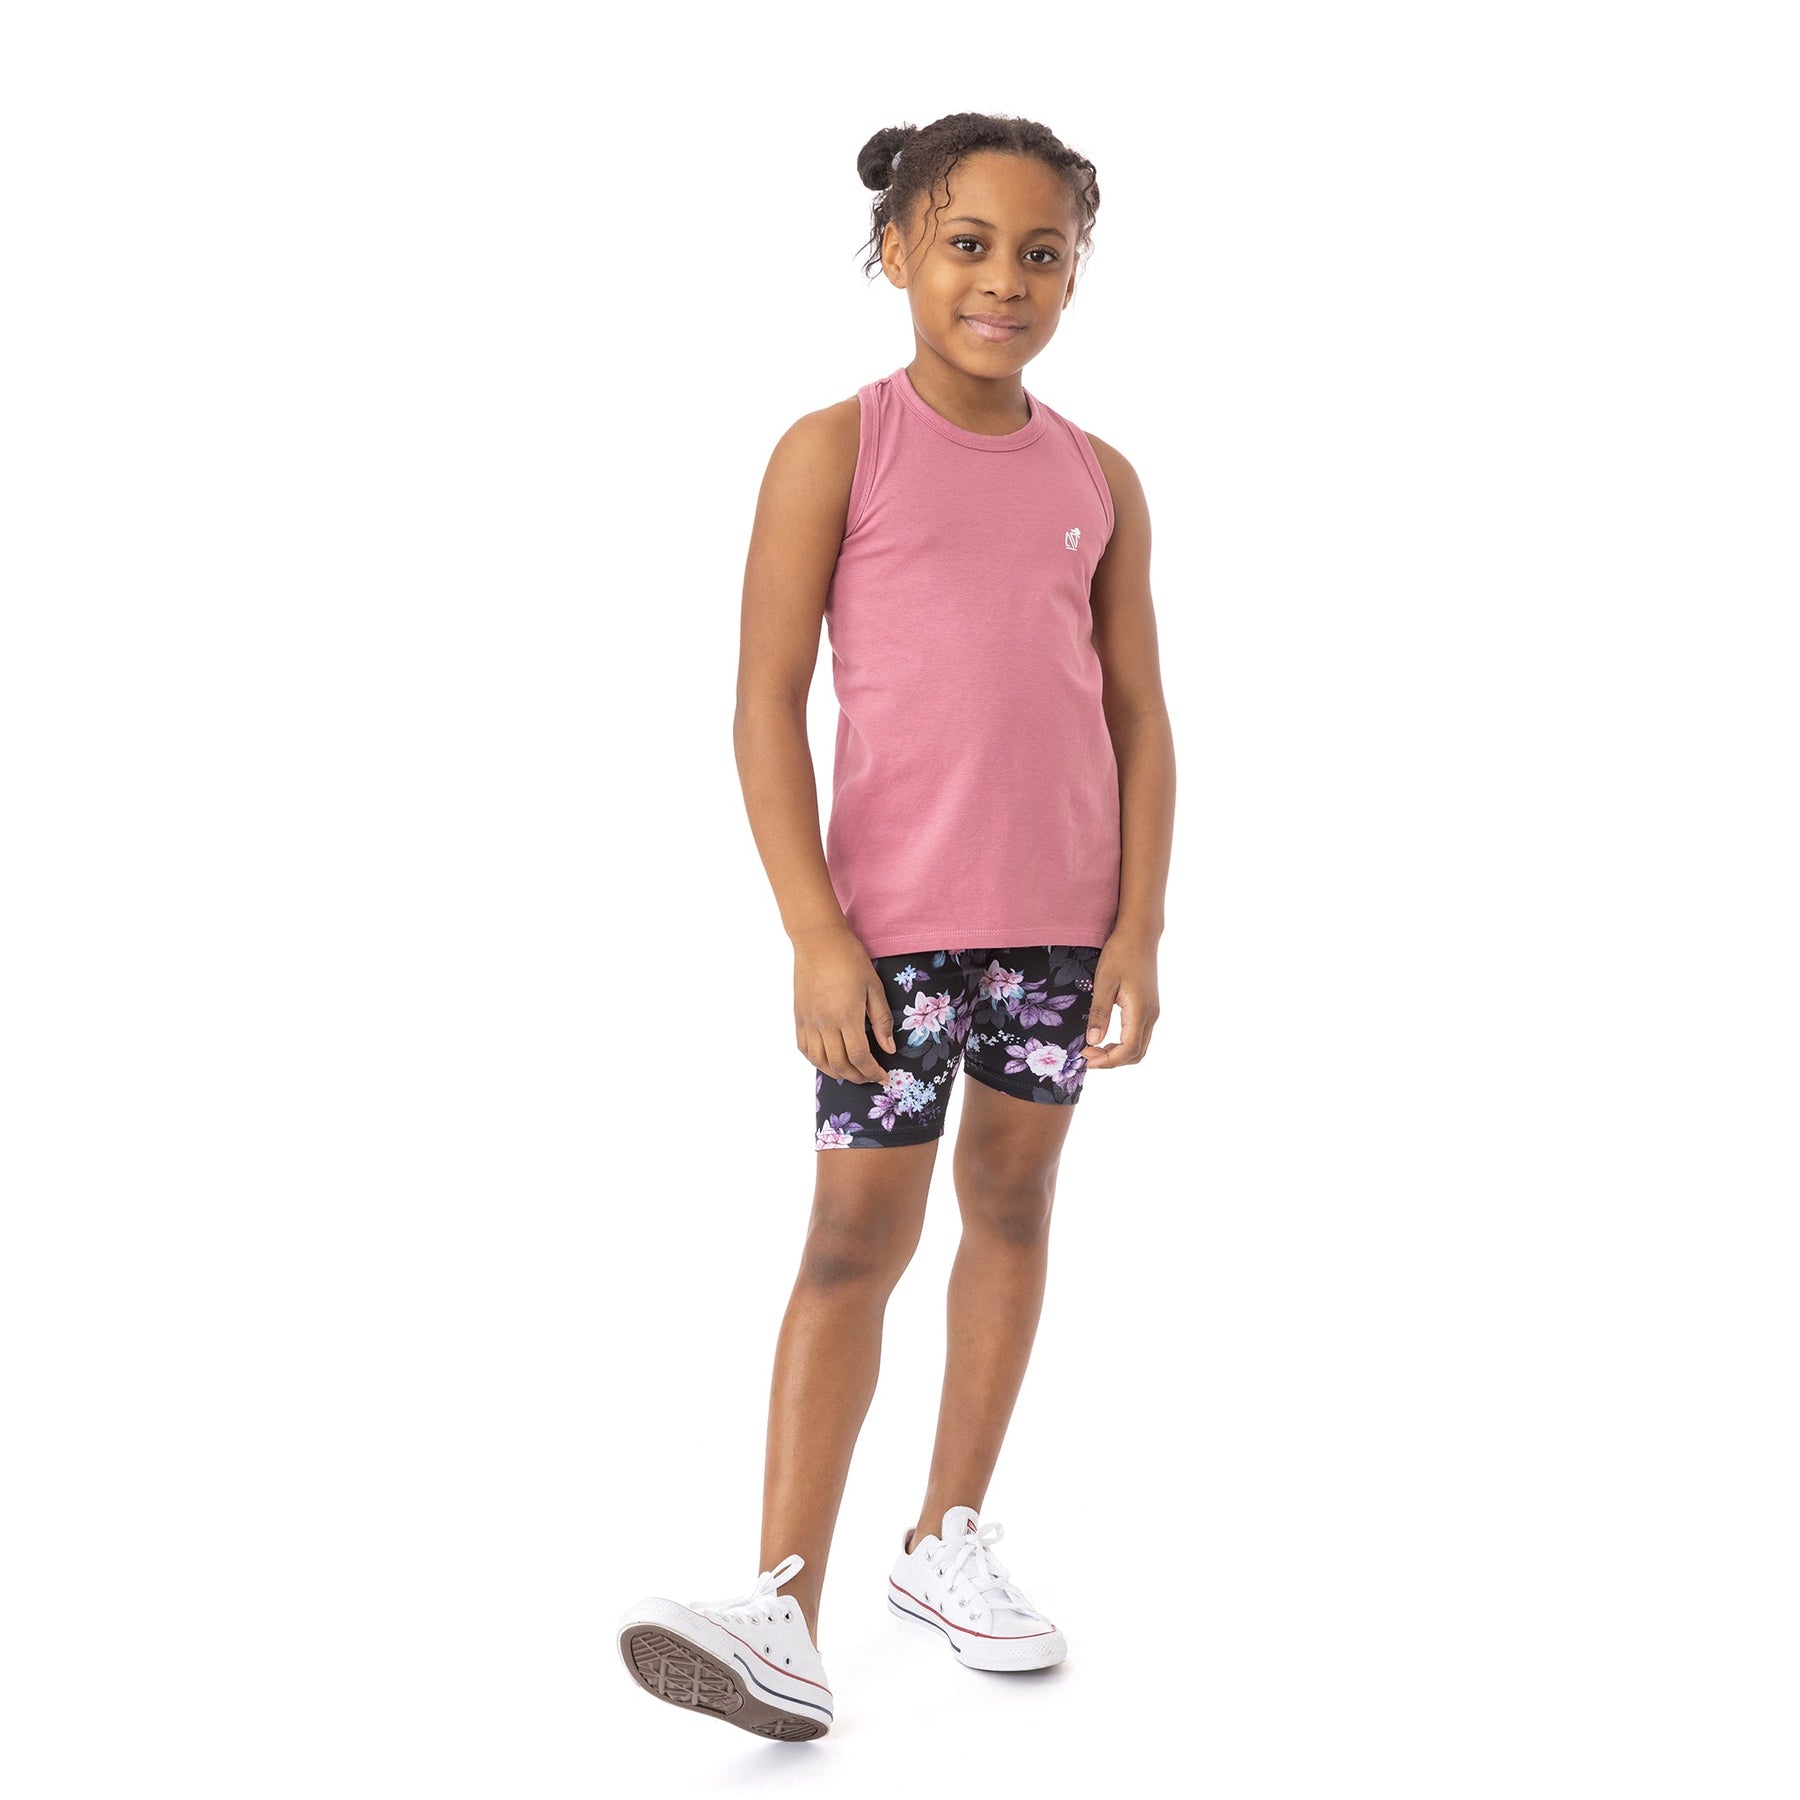 Bermuda cycliste pour enfant fille et maman par Nanö | S22L50-09 Noir | Boutique Flos, vêtements pour bébés et enfants